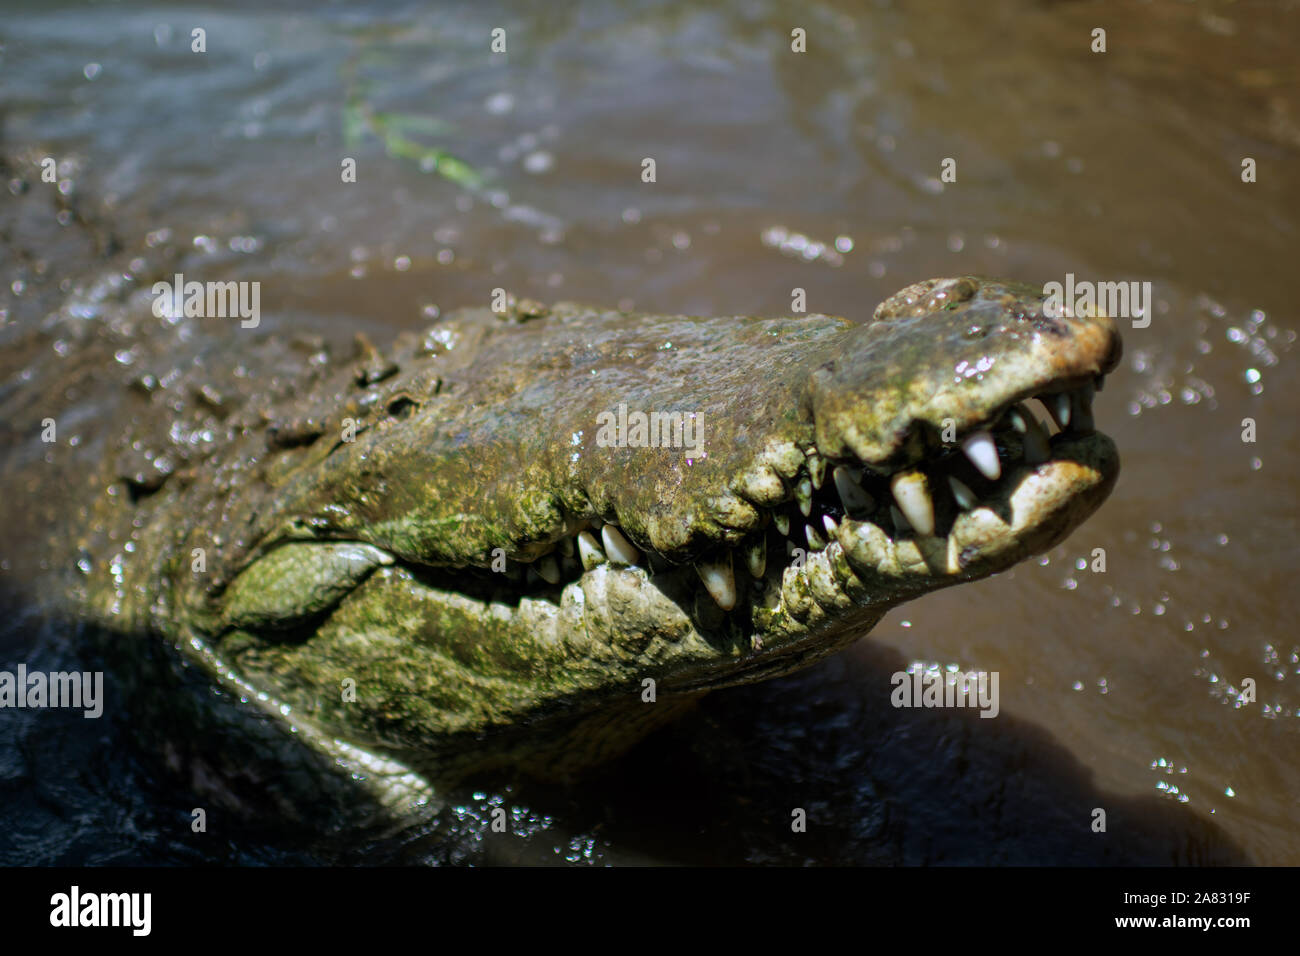 American Crocodile (Crocodylus acutus) in Tarcoles River, Costa Rica Stock Photo